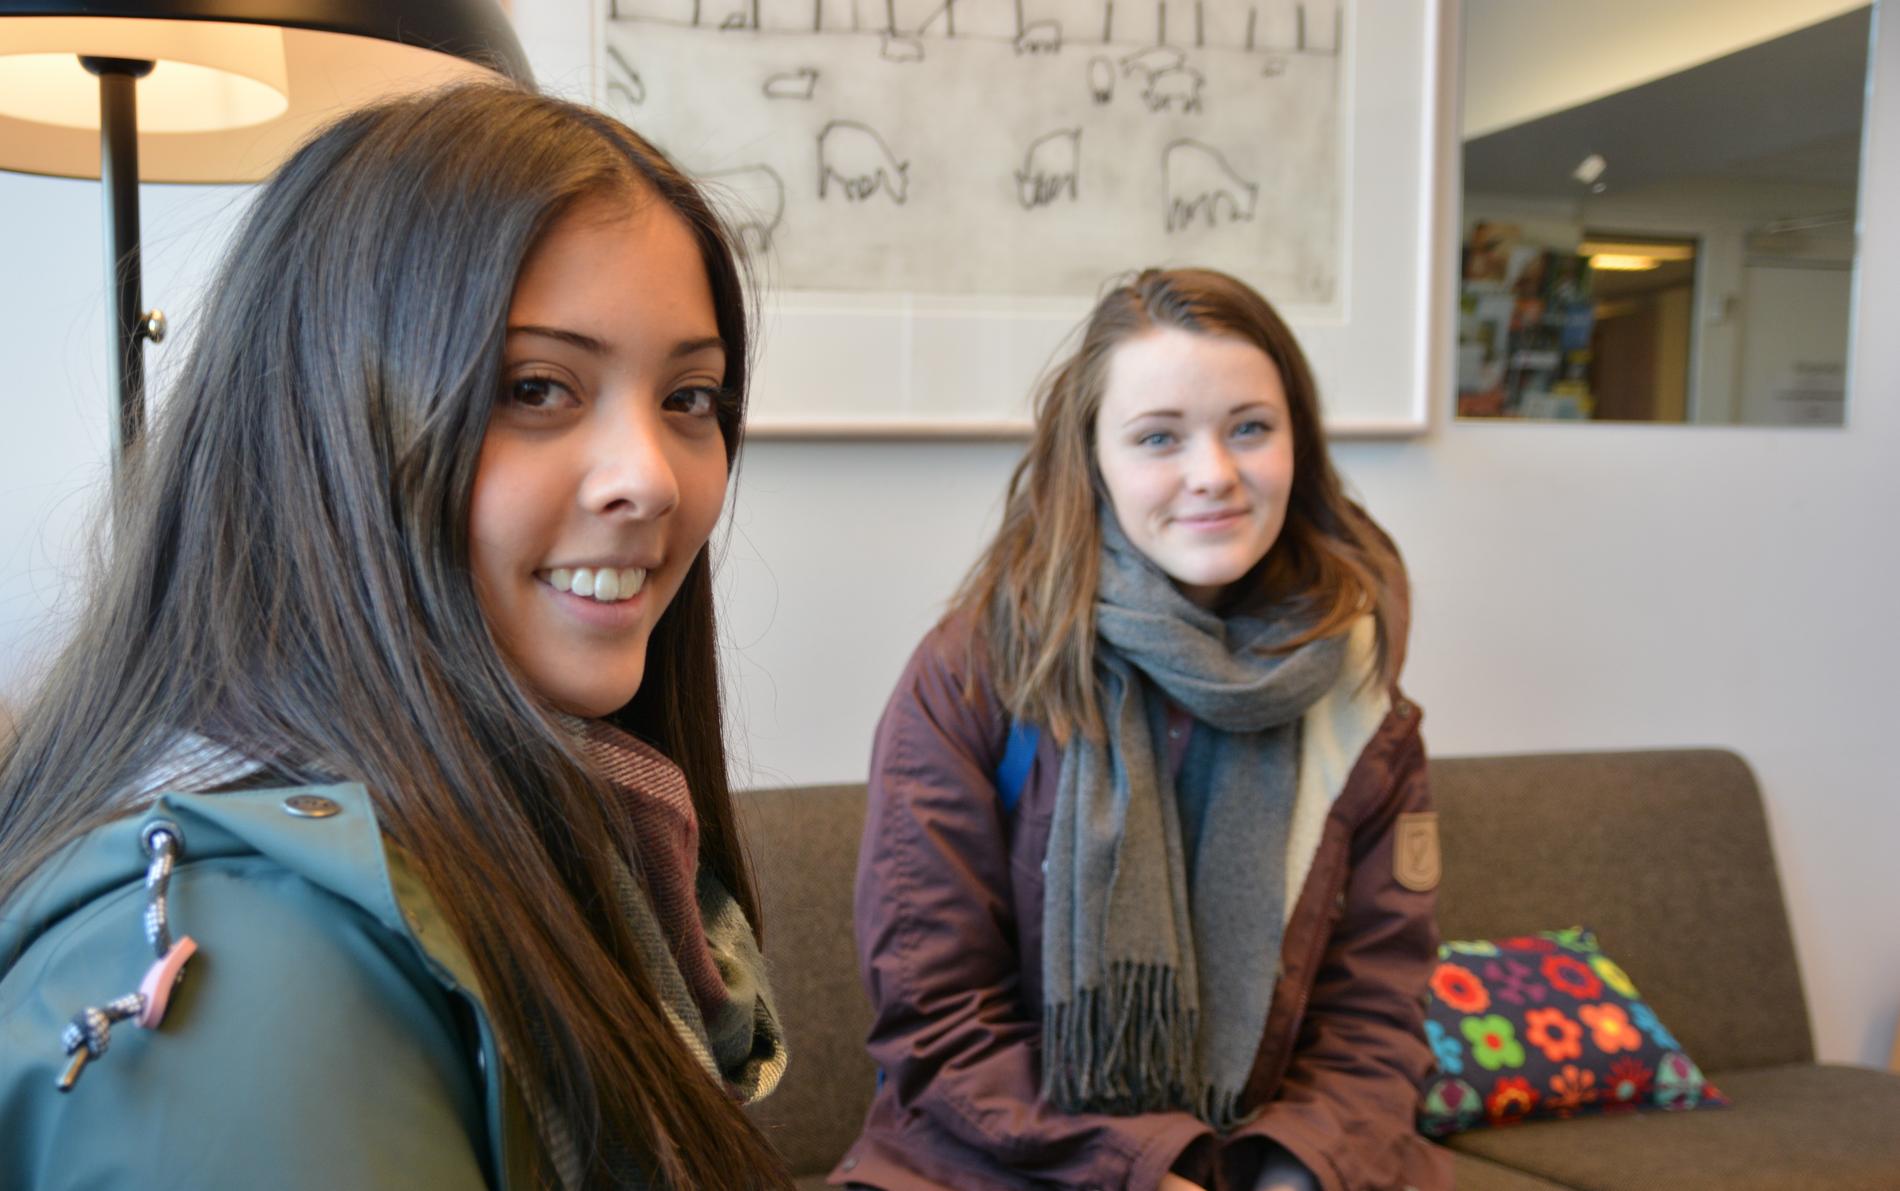 Åse Suwanna Johnsen (18) og Elise Aas Ersdal (17) er bare to av mange unge som kjenner at det er mye press i hverdagen.